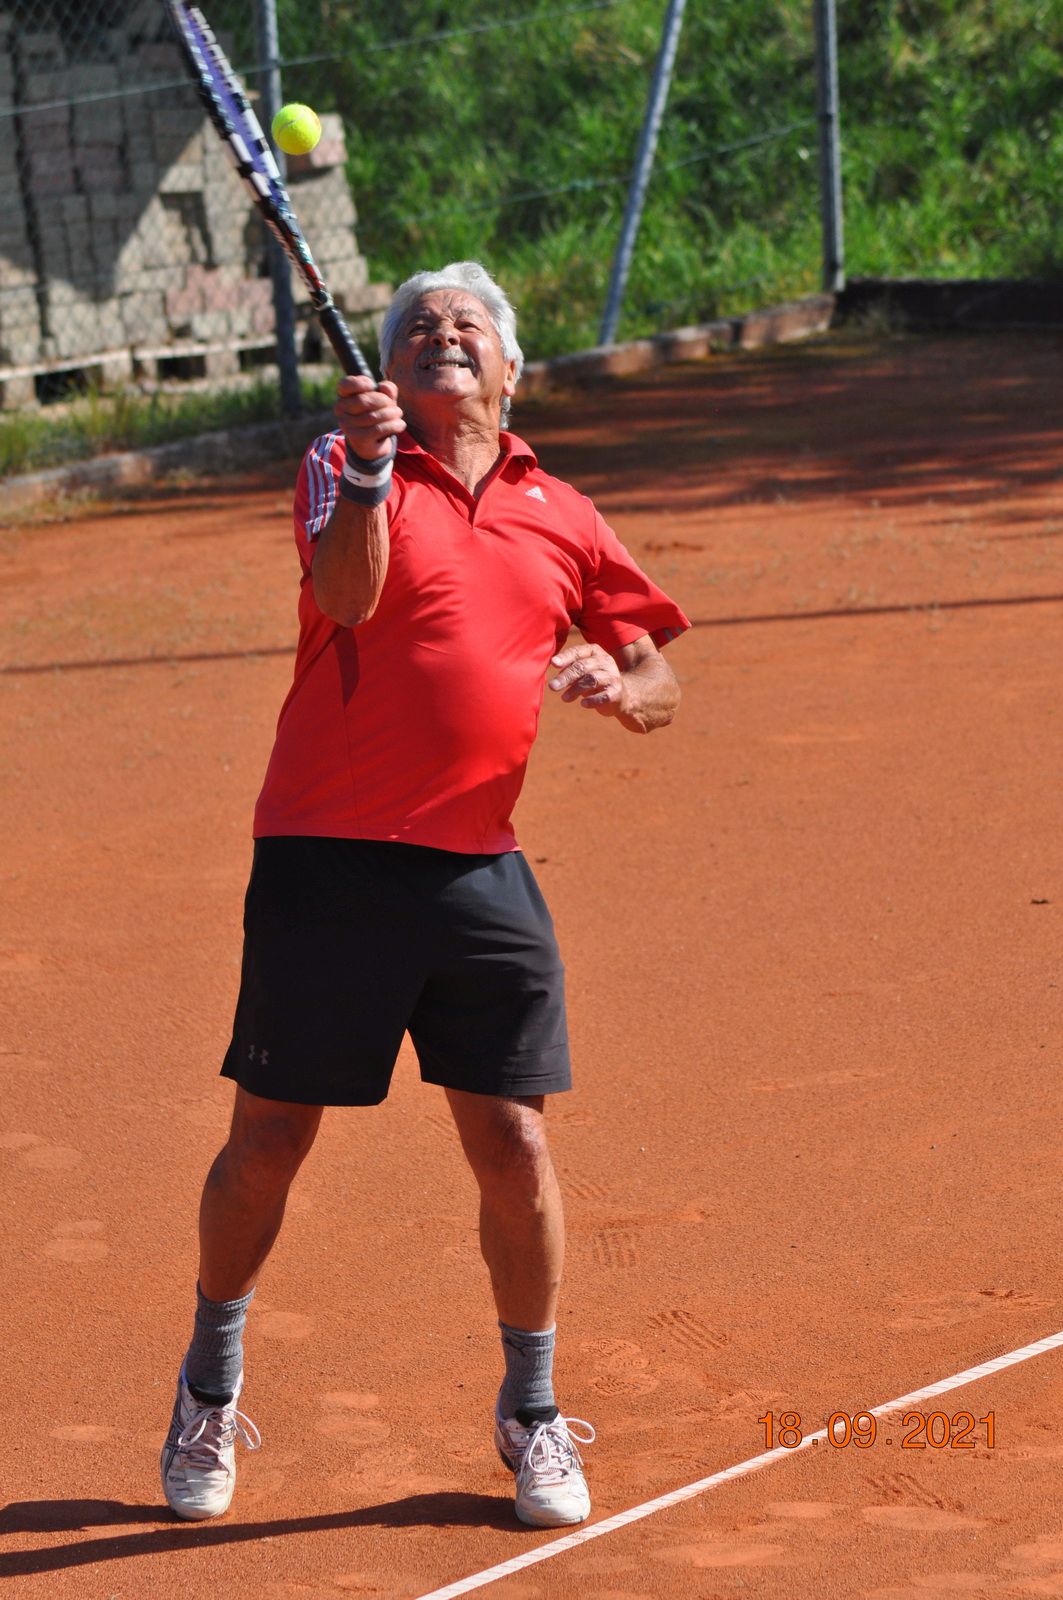 Tennis-OM-2021-09